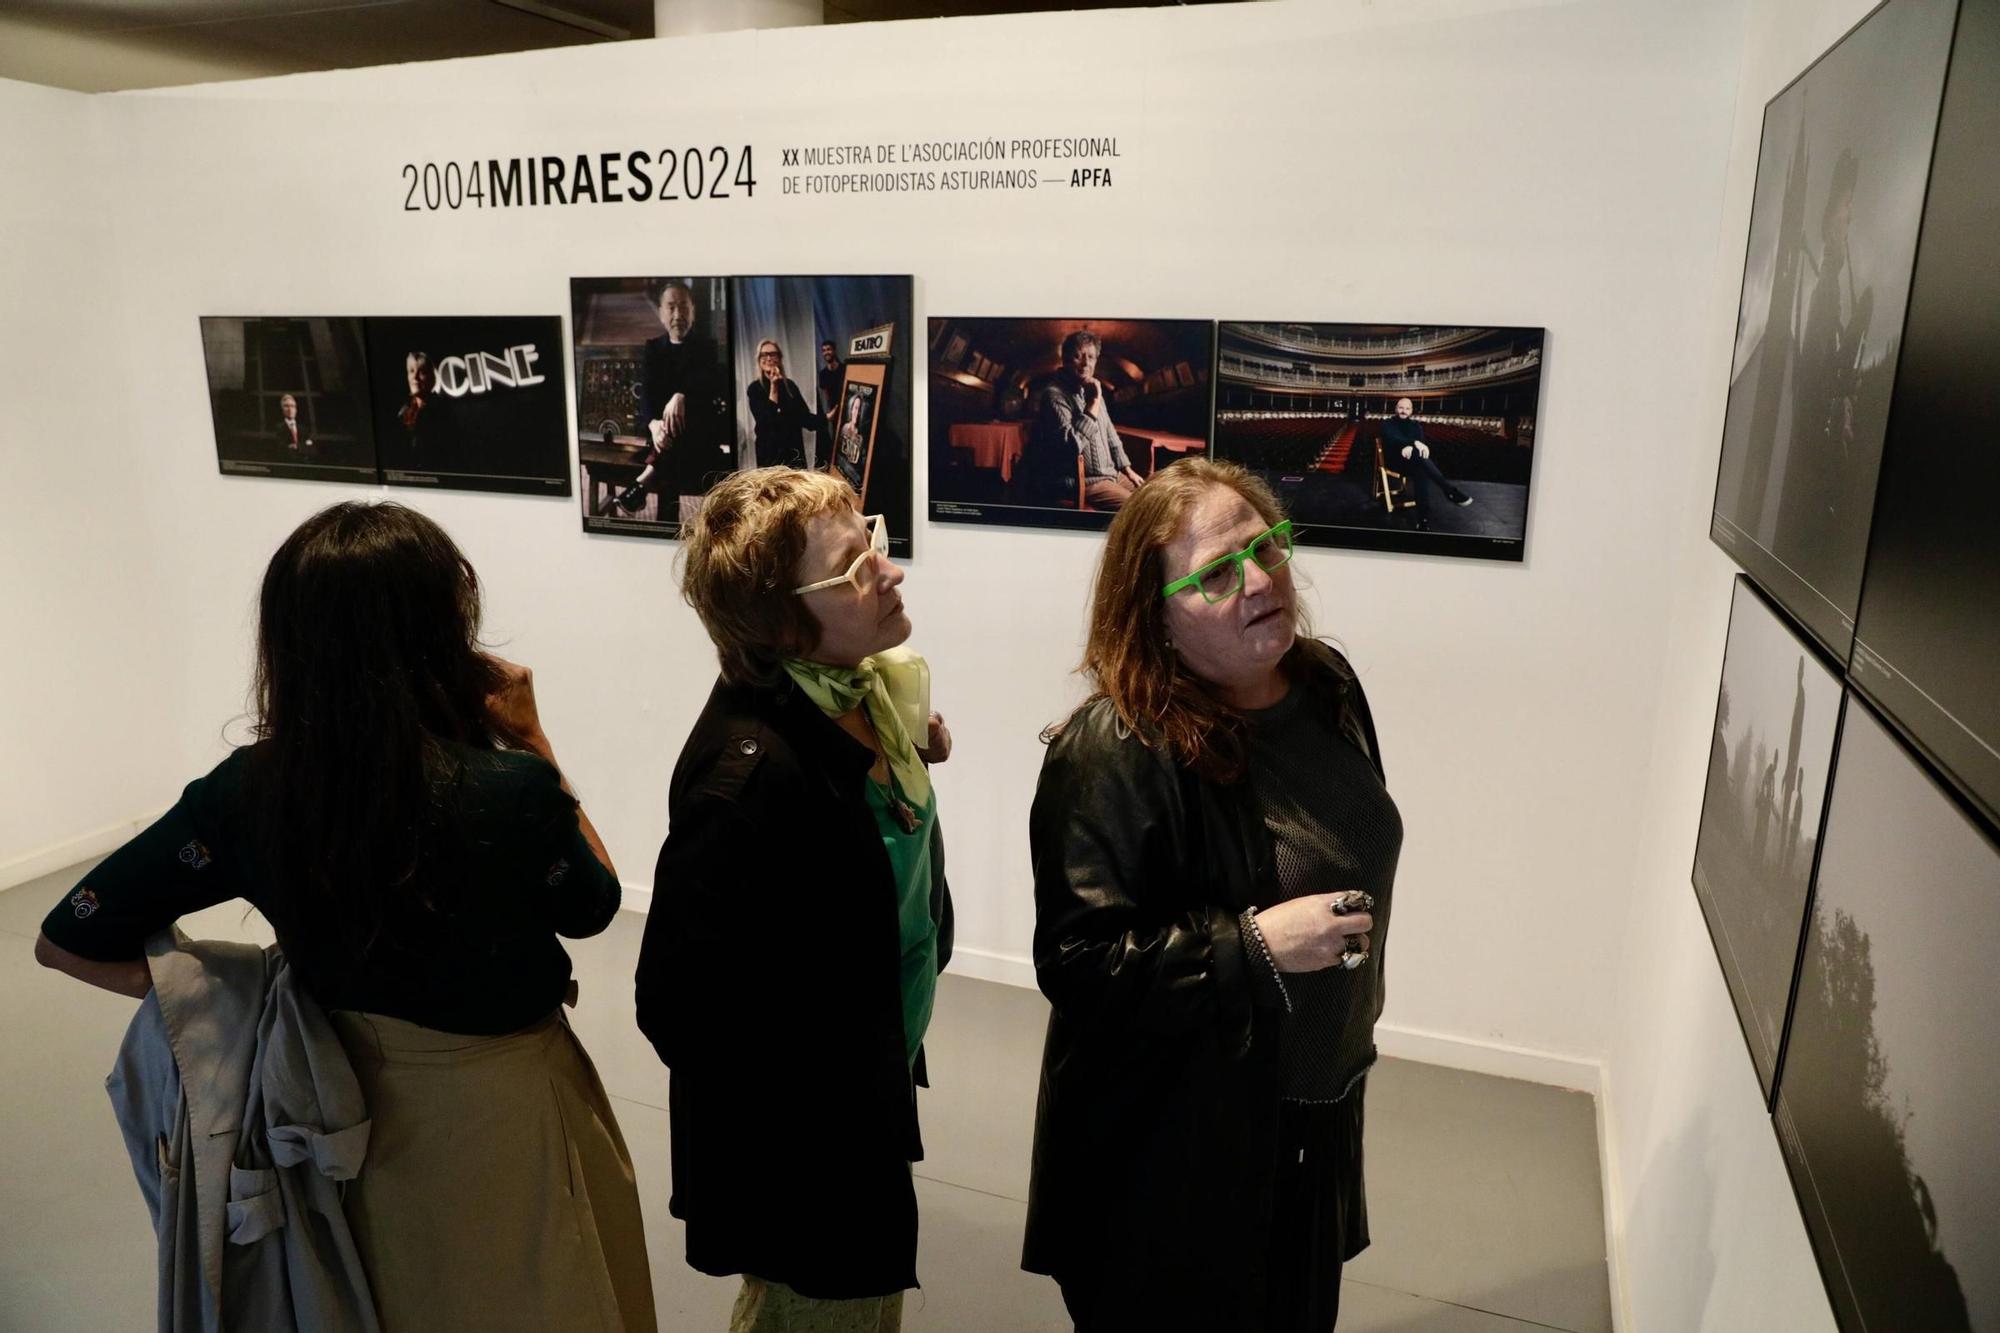 Así es la exposición "Miraes" de los fotoperiodistas asturianos (en imágenes)